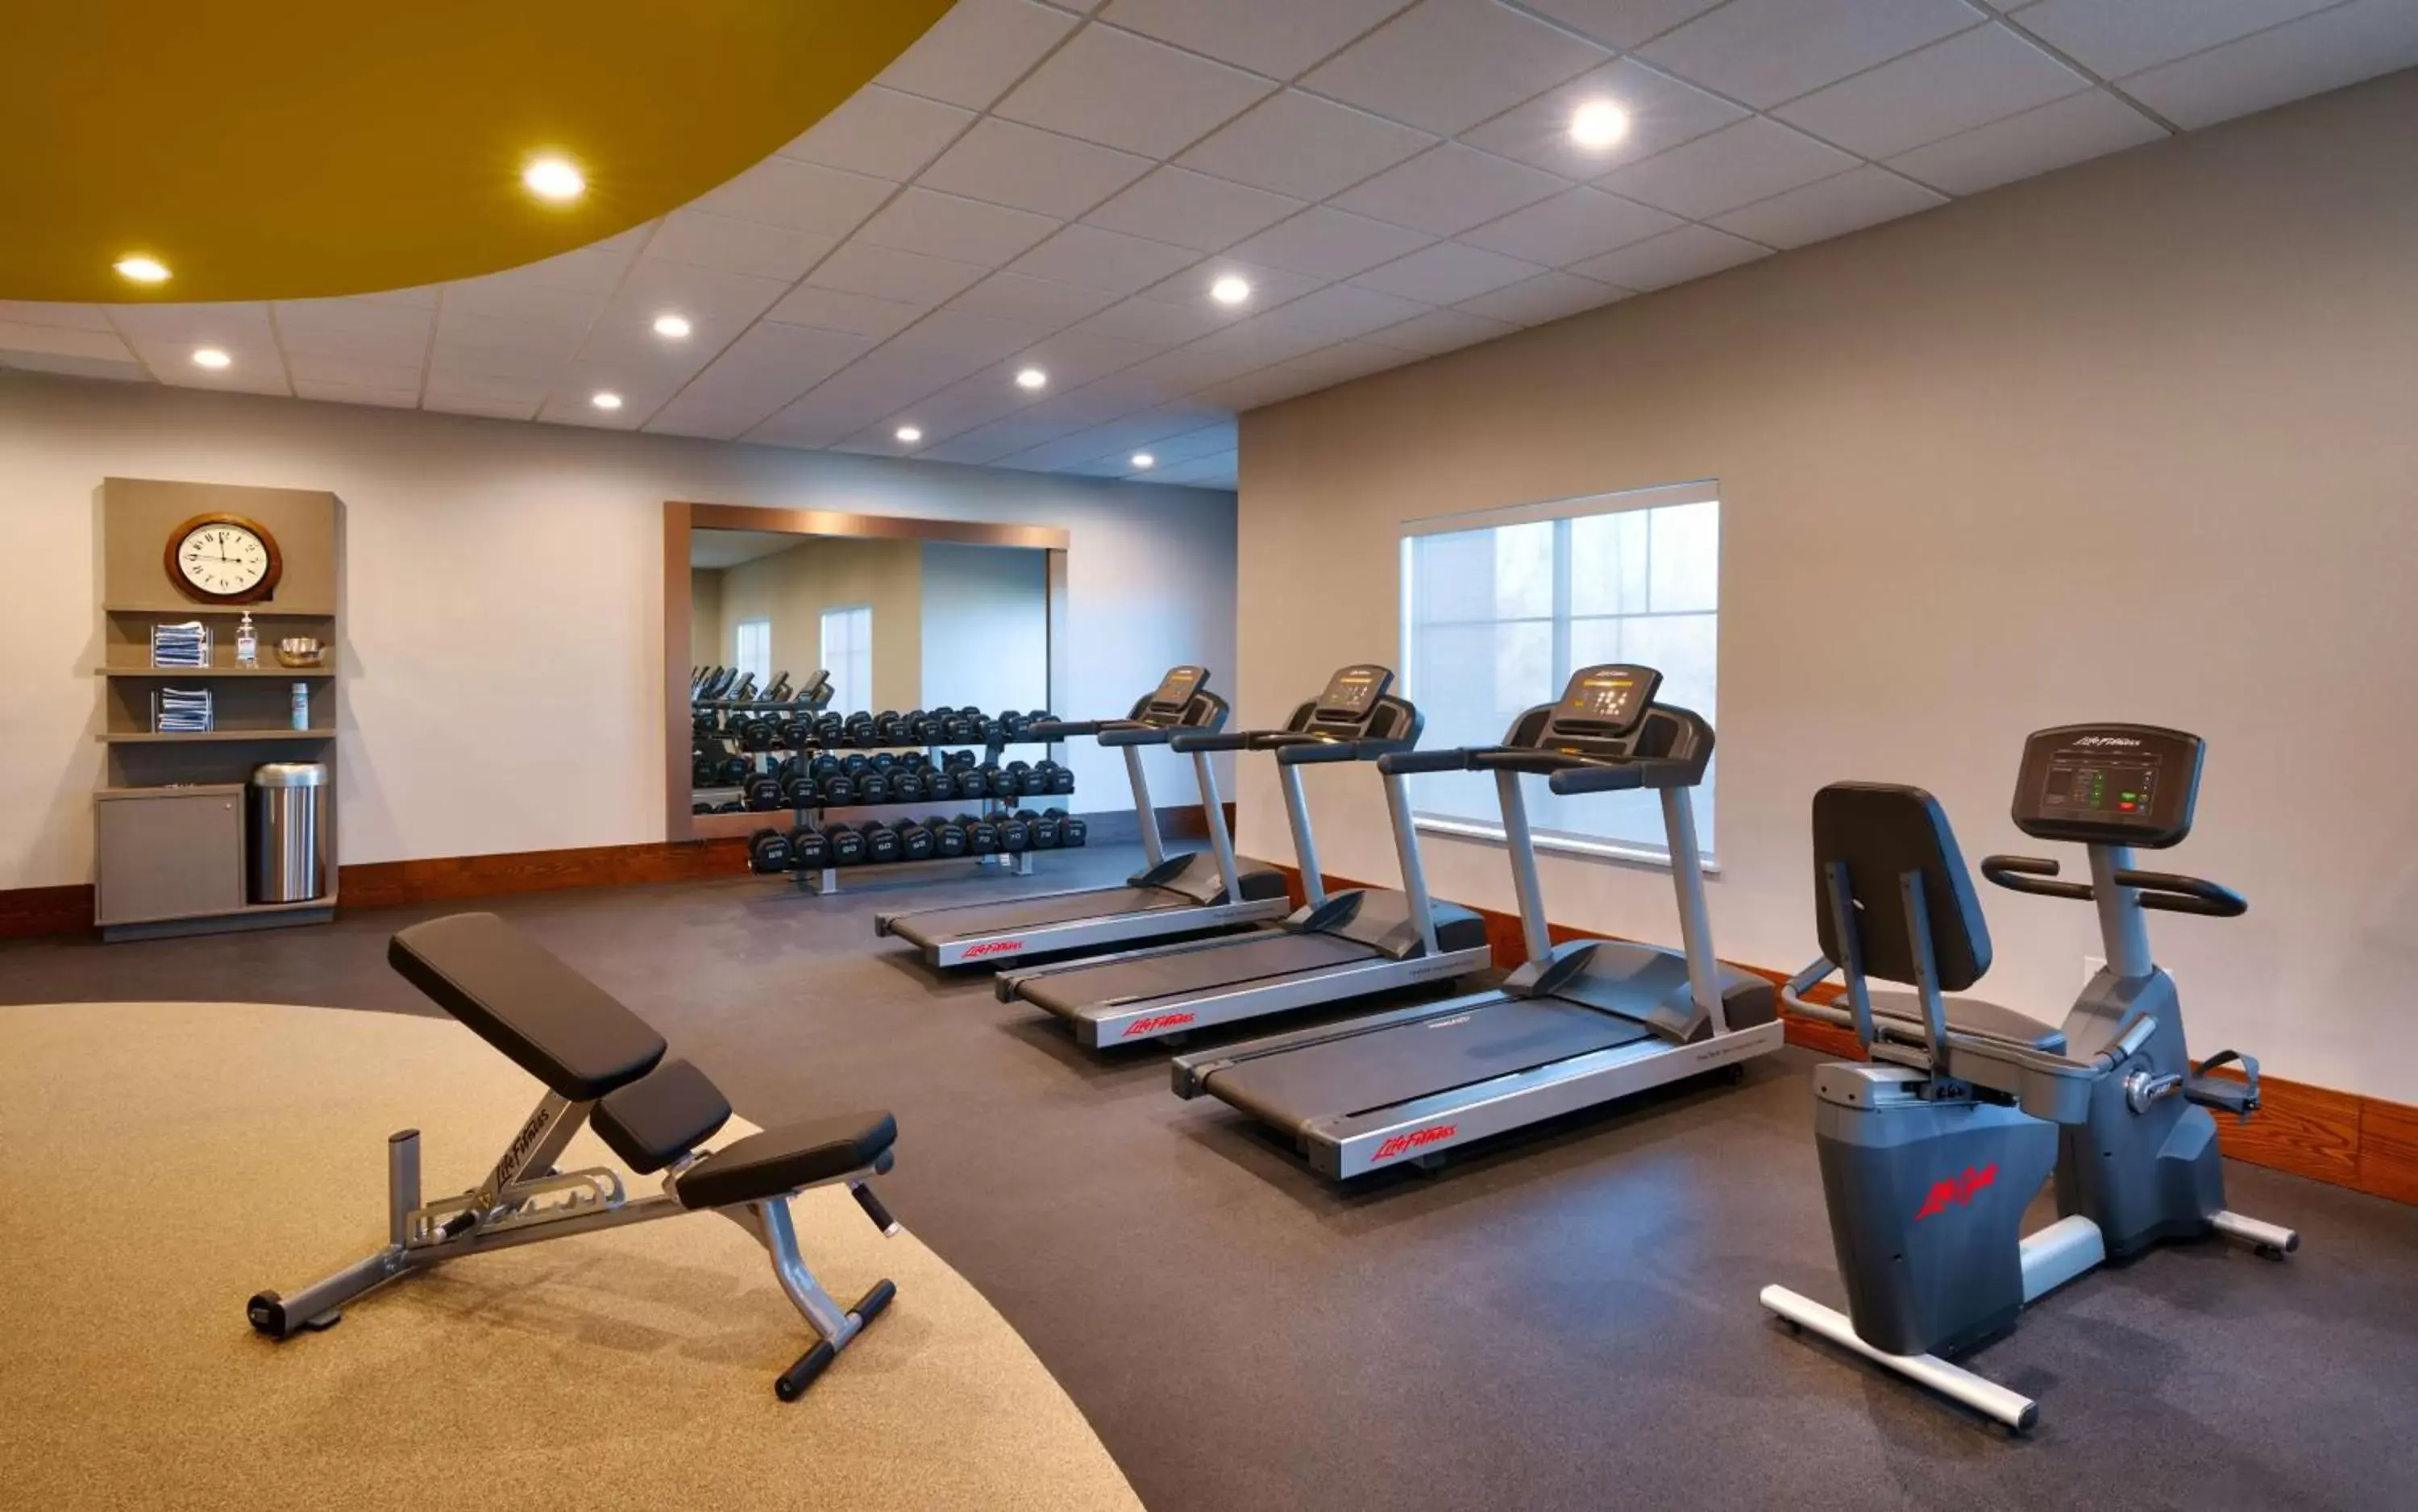 Fitness centre/facilities, Fitness Center/Facilities in Hilton Garden Inn Prescott Downtown, Az